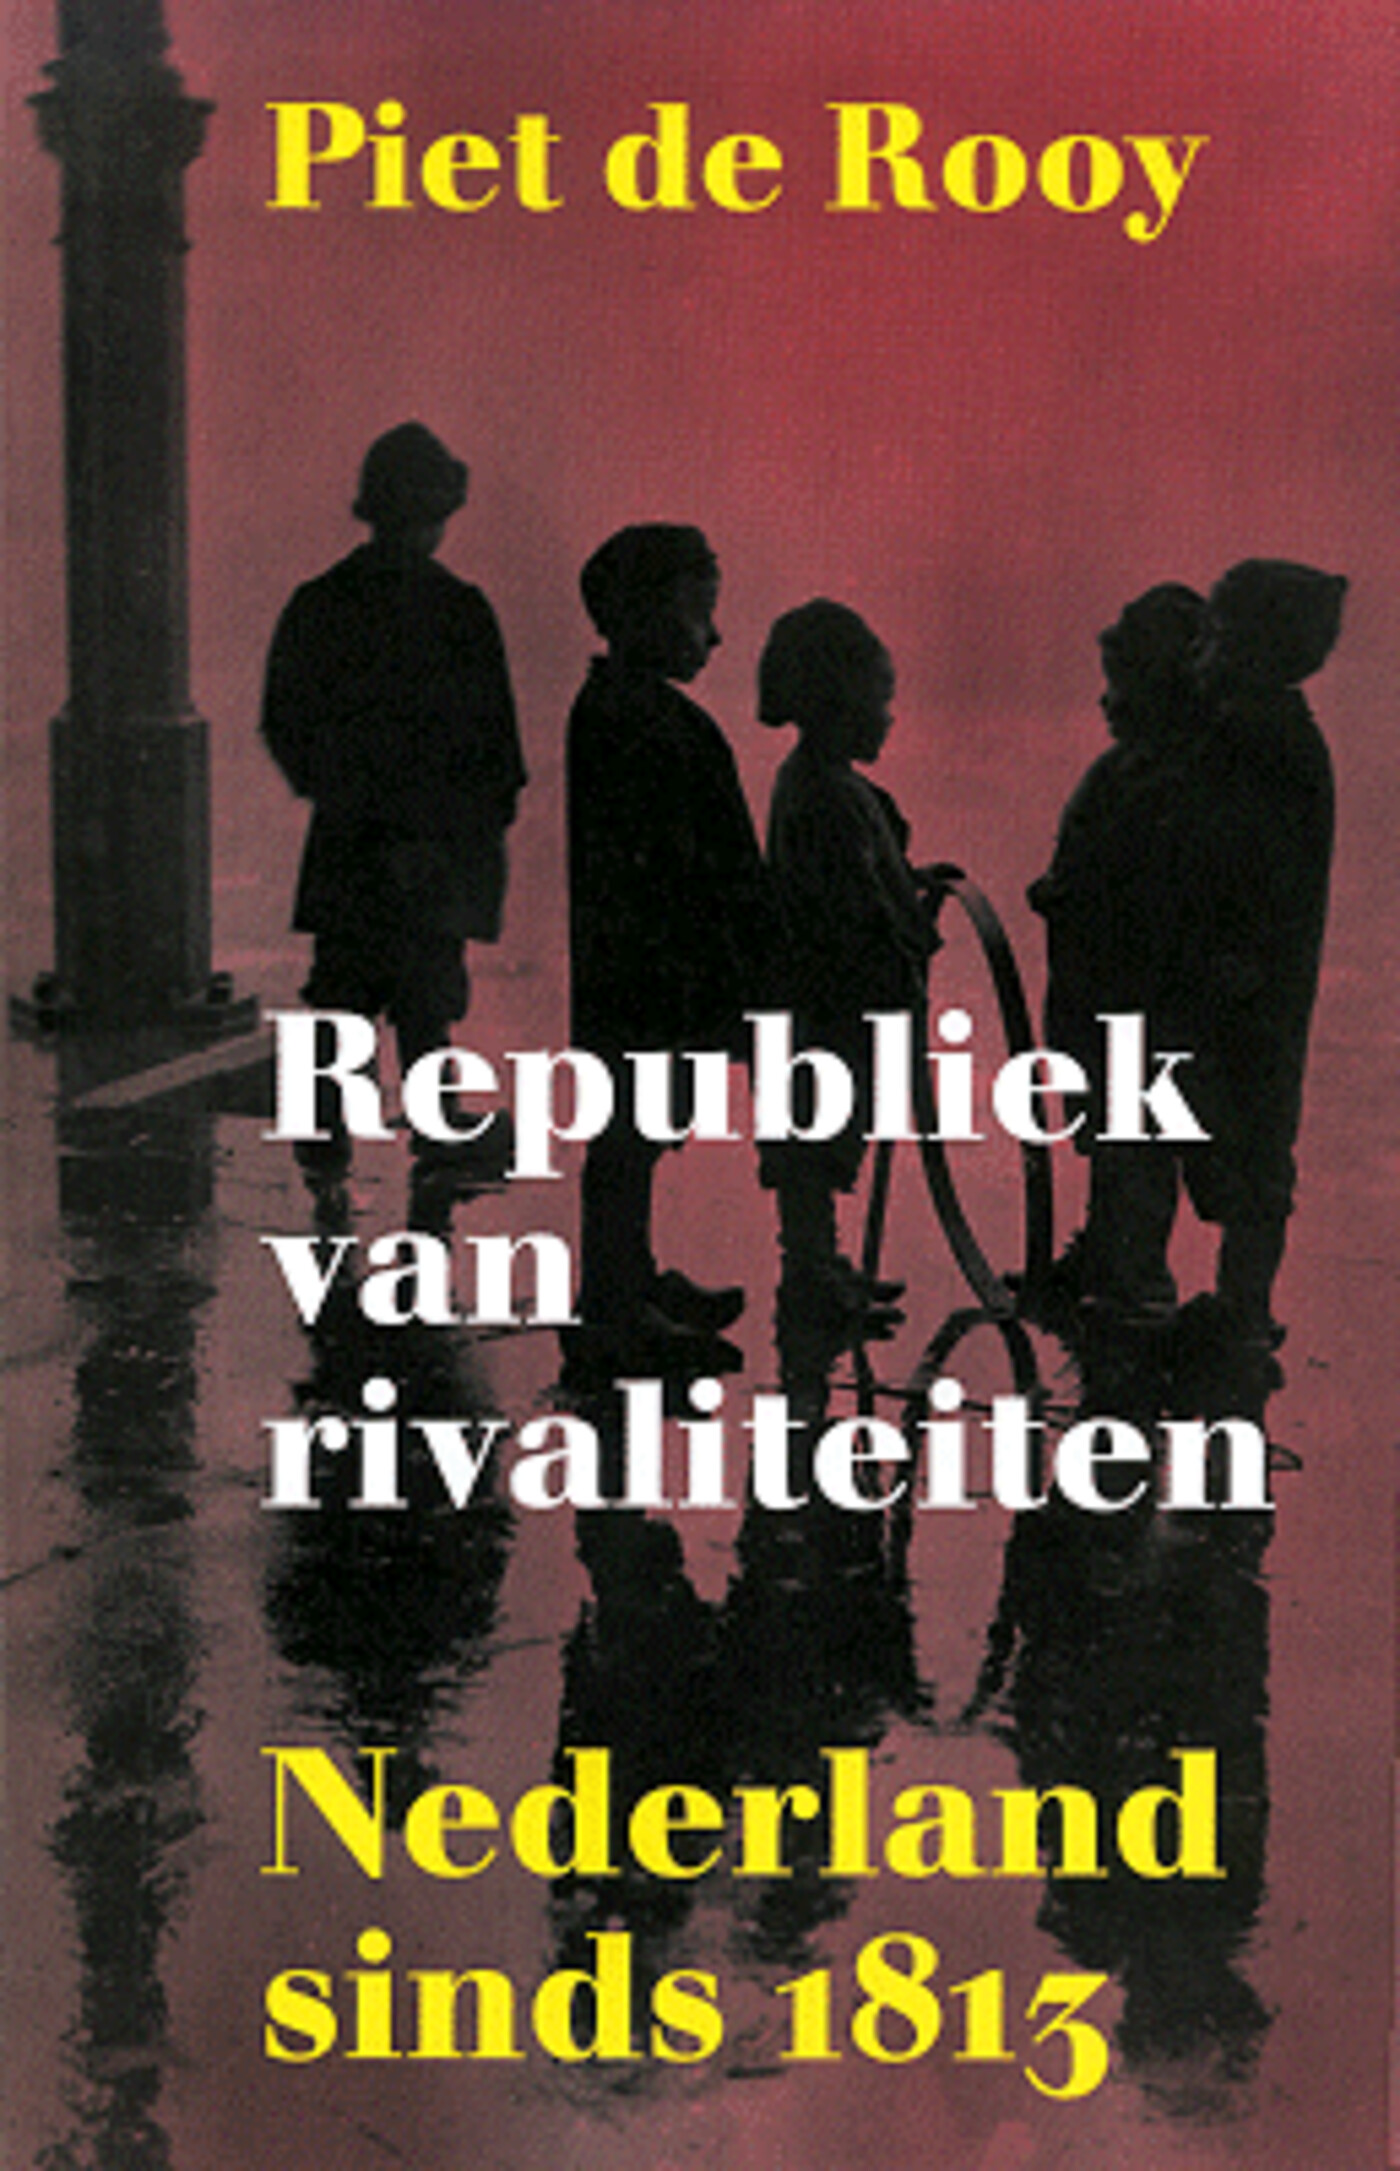 Afl. 14: Nederland, Republiek van rivaliteiten